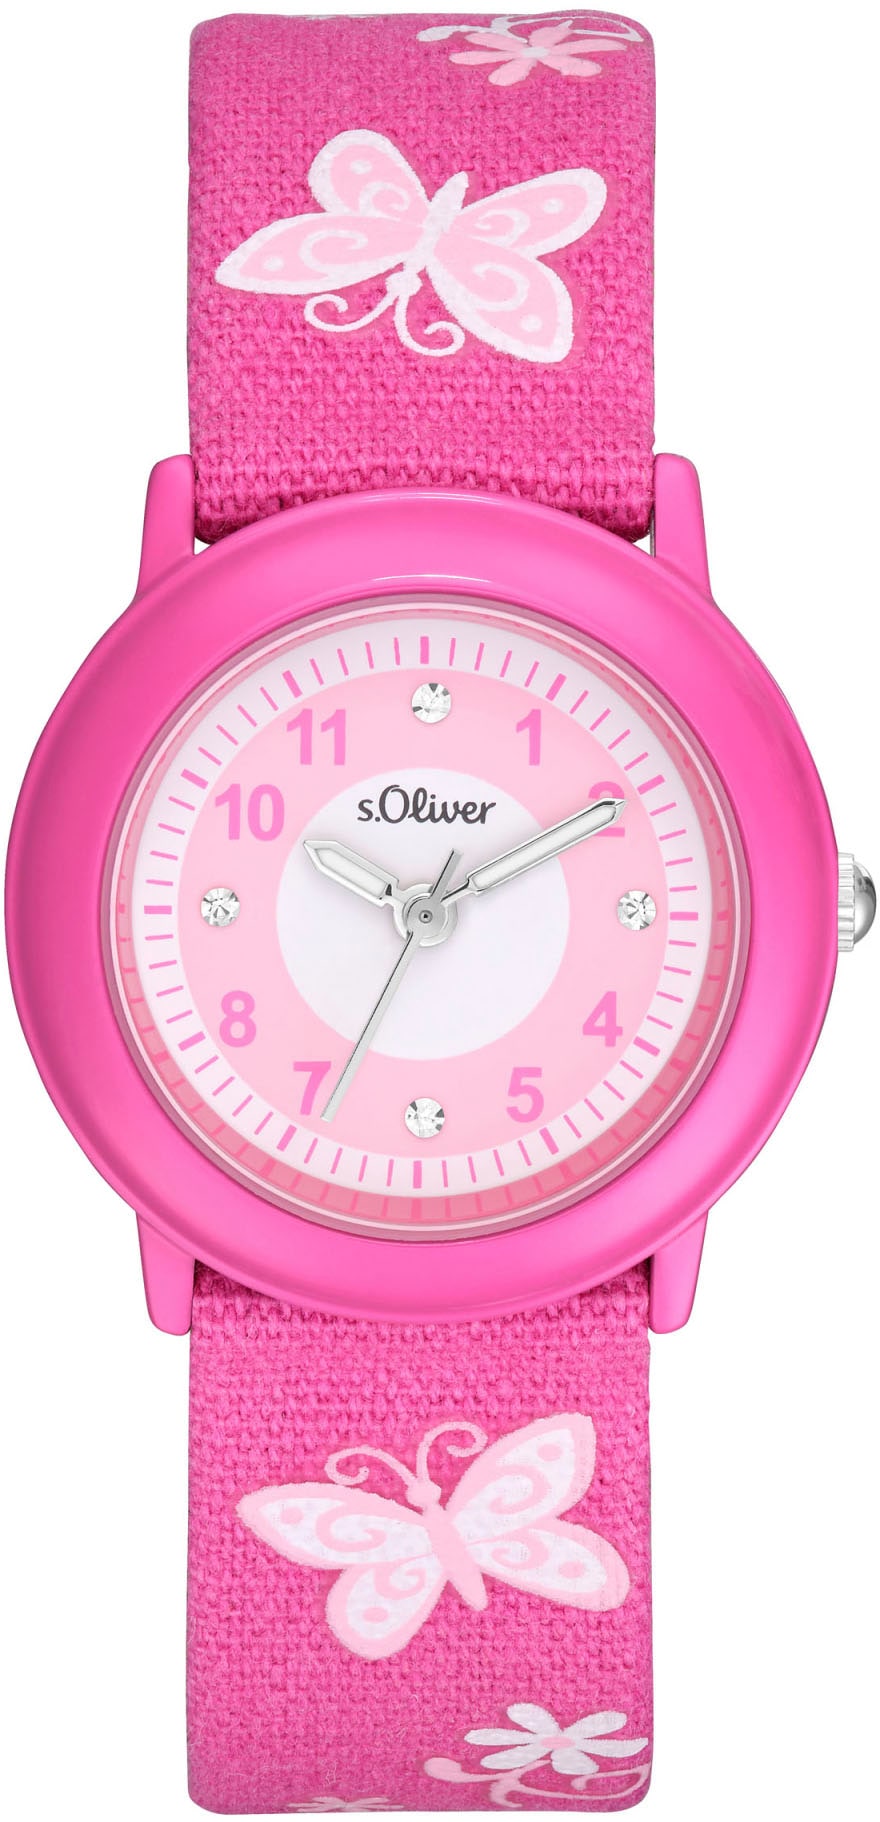 s.Oliver Quarzuhr »2036748«, Armbanduhr, Kinderuhr, ideal auch als Geschenk